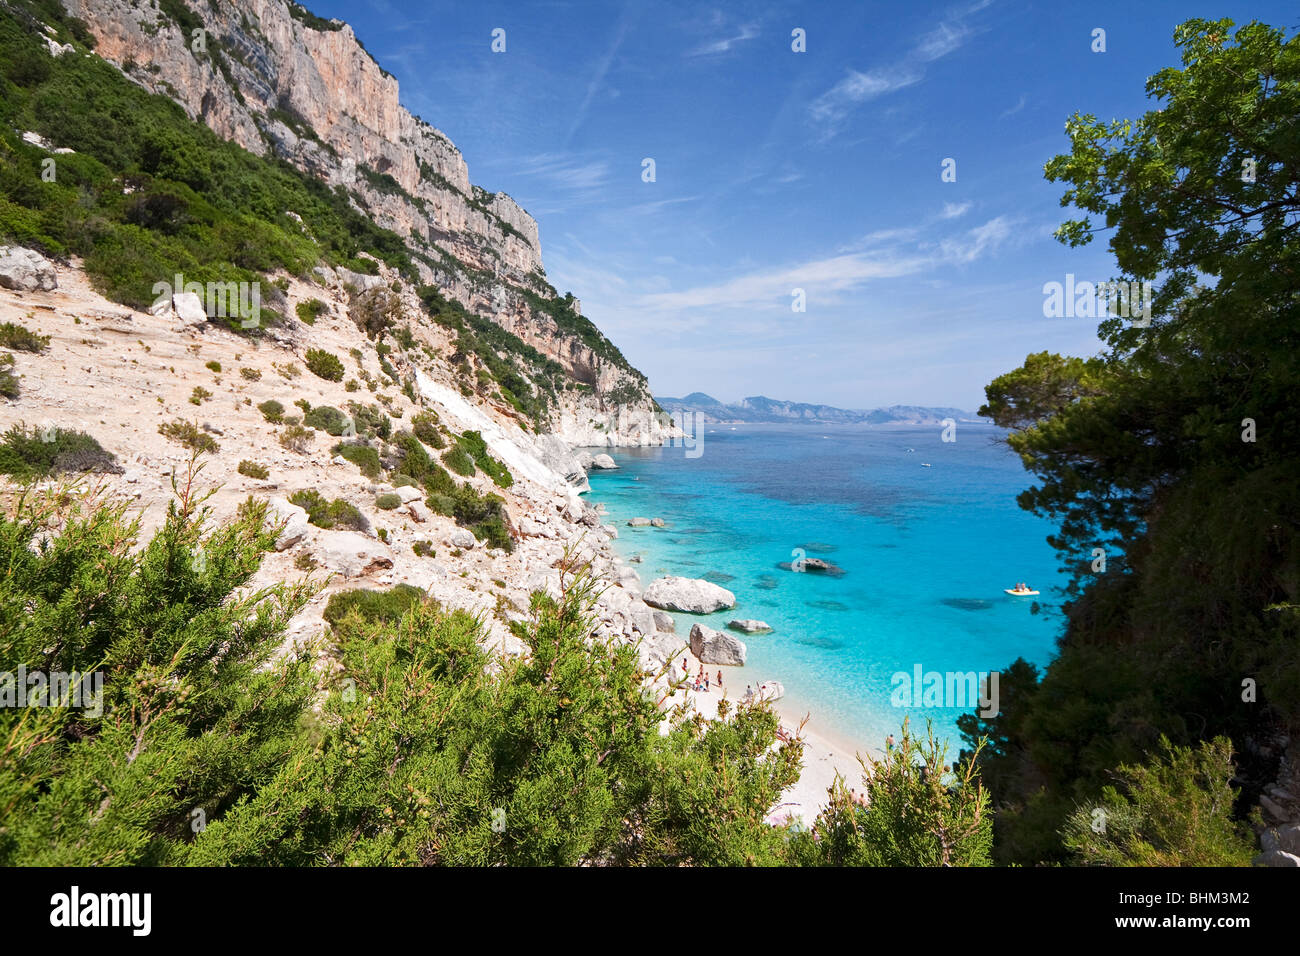 Alloggiamento vuoto Cala Goloritze Beach, l'isola di Sardegna Italia. Blu chiaro in acqua Cala Goloritzè Bay, Mar Mediterraneo. Foto Stock